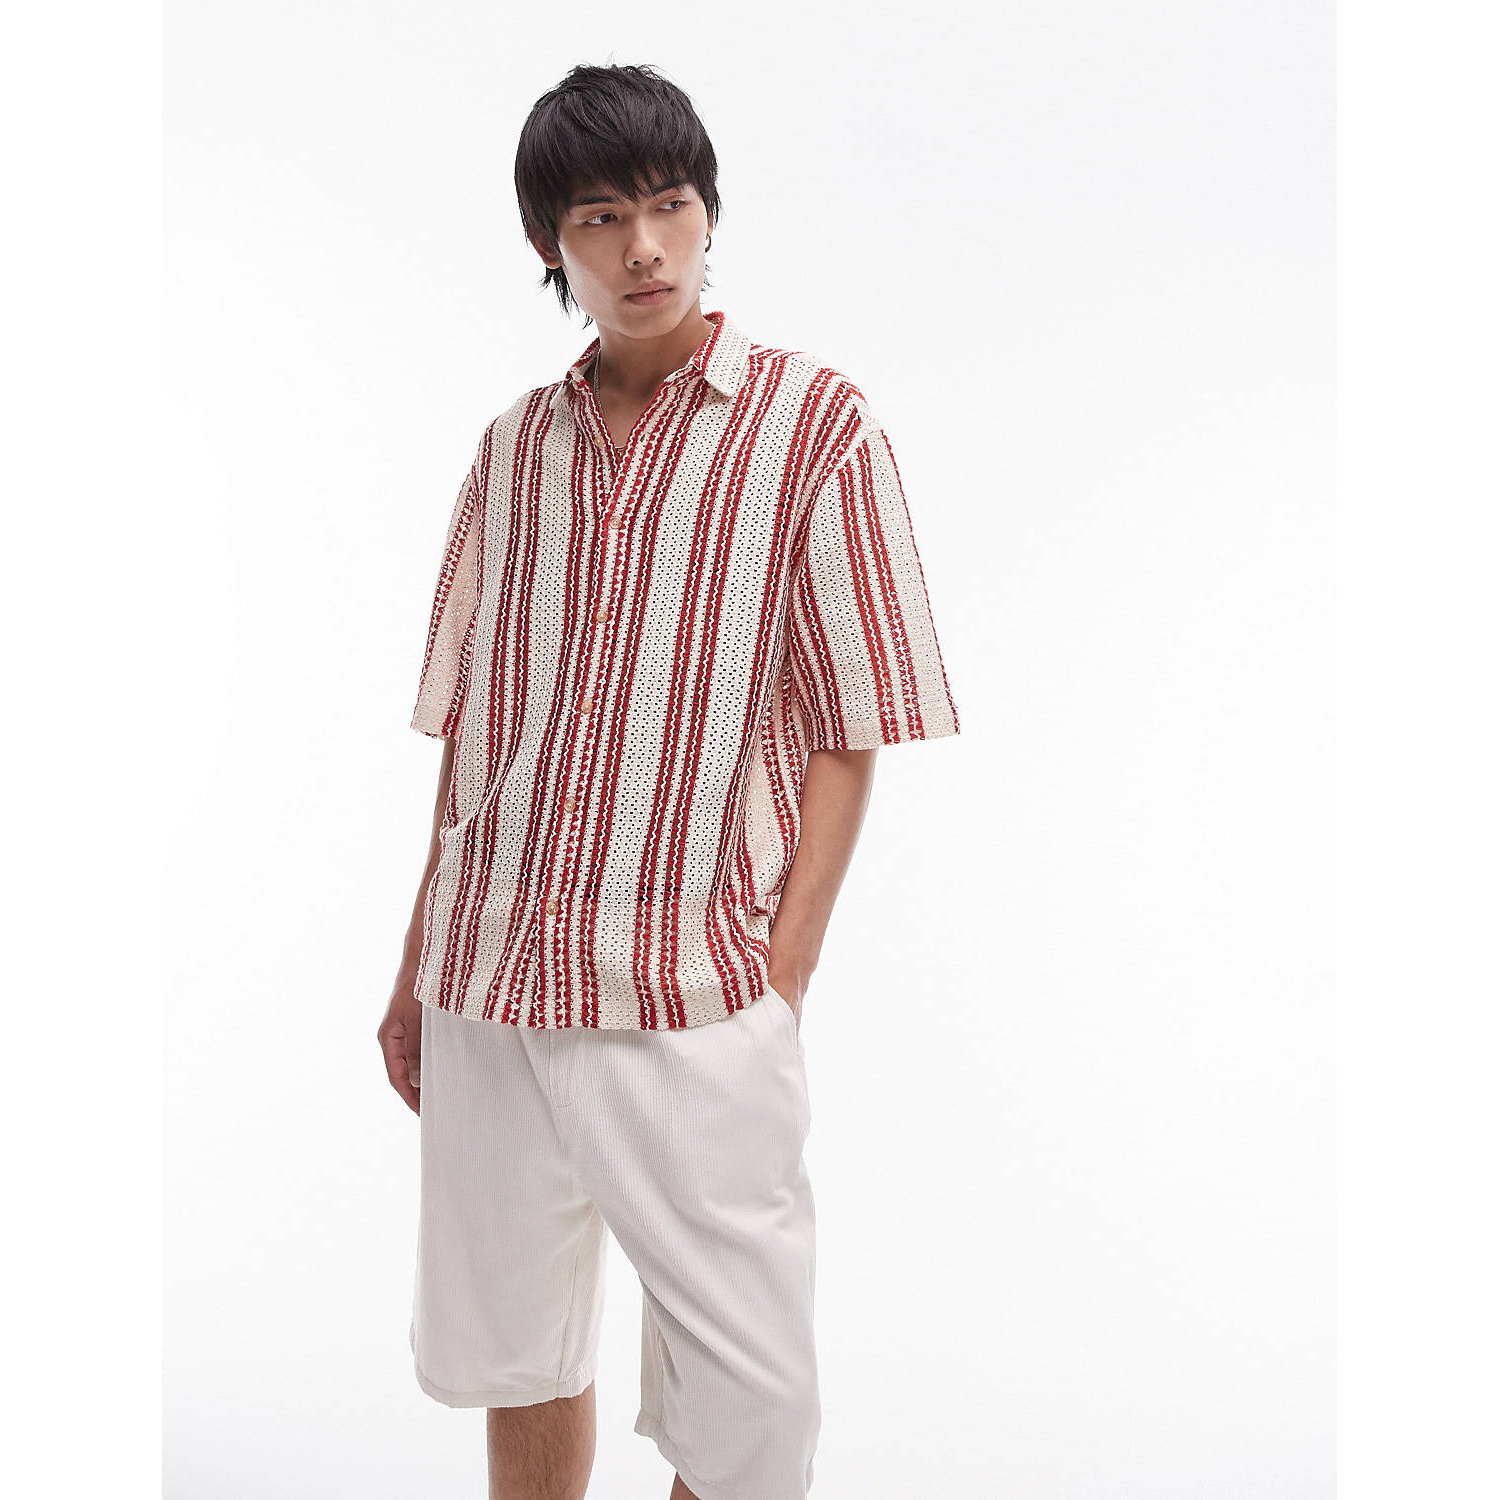 полосатая рубашка стандартного кроя из хлопковой пряжи Рубашка Topman Short Sleeve Relaxed Striped Crochet, красный